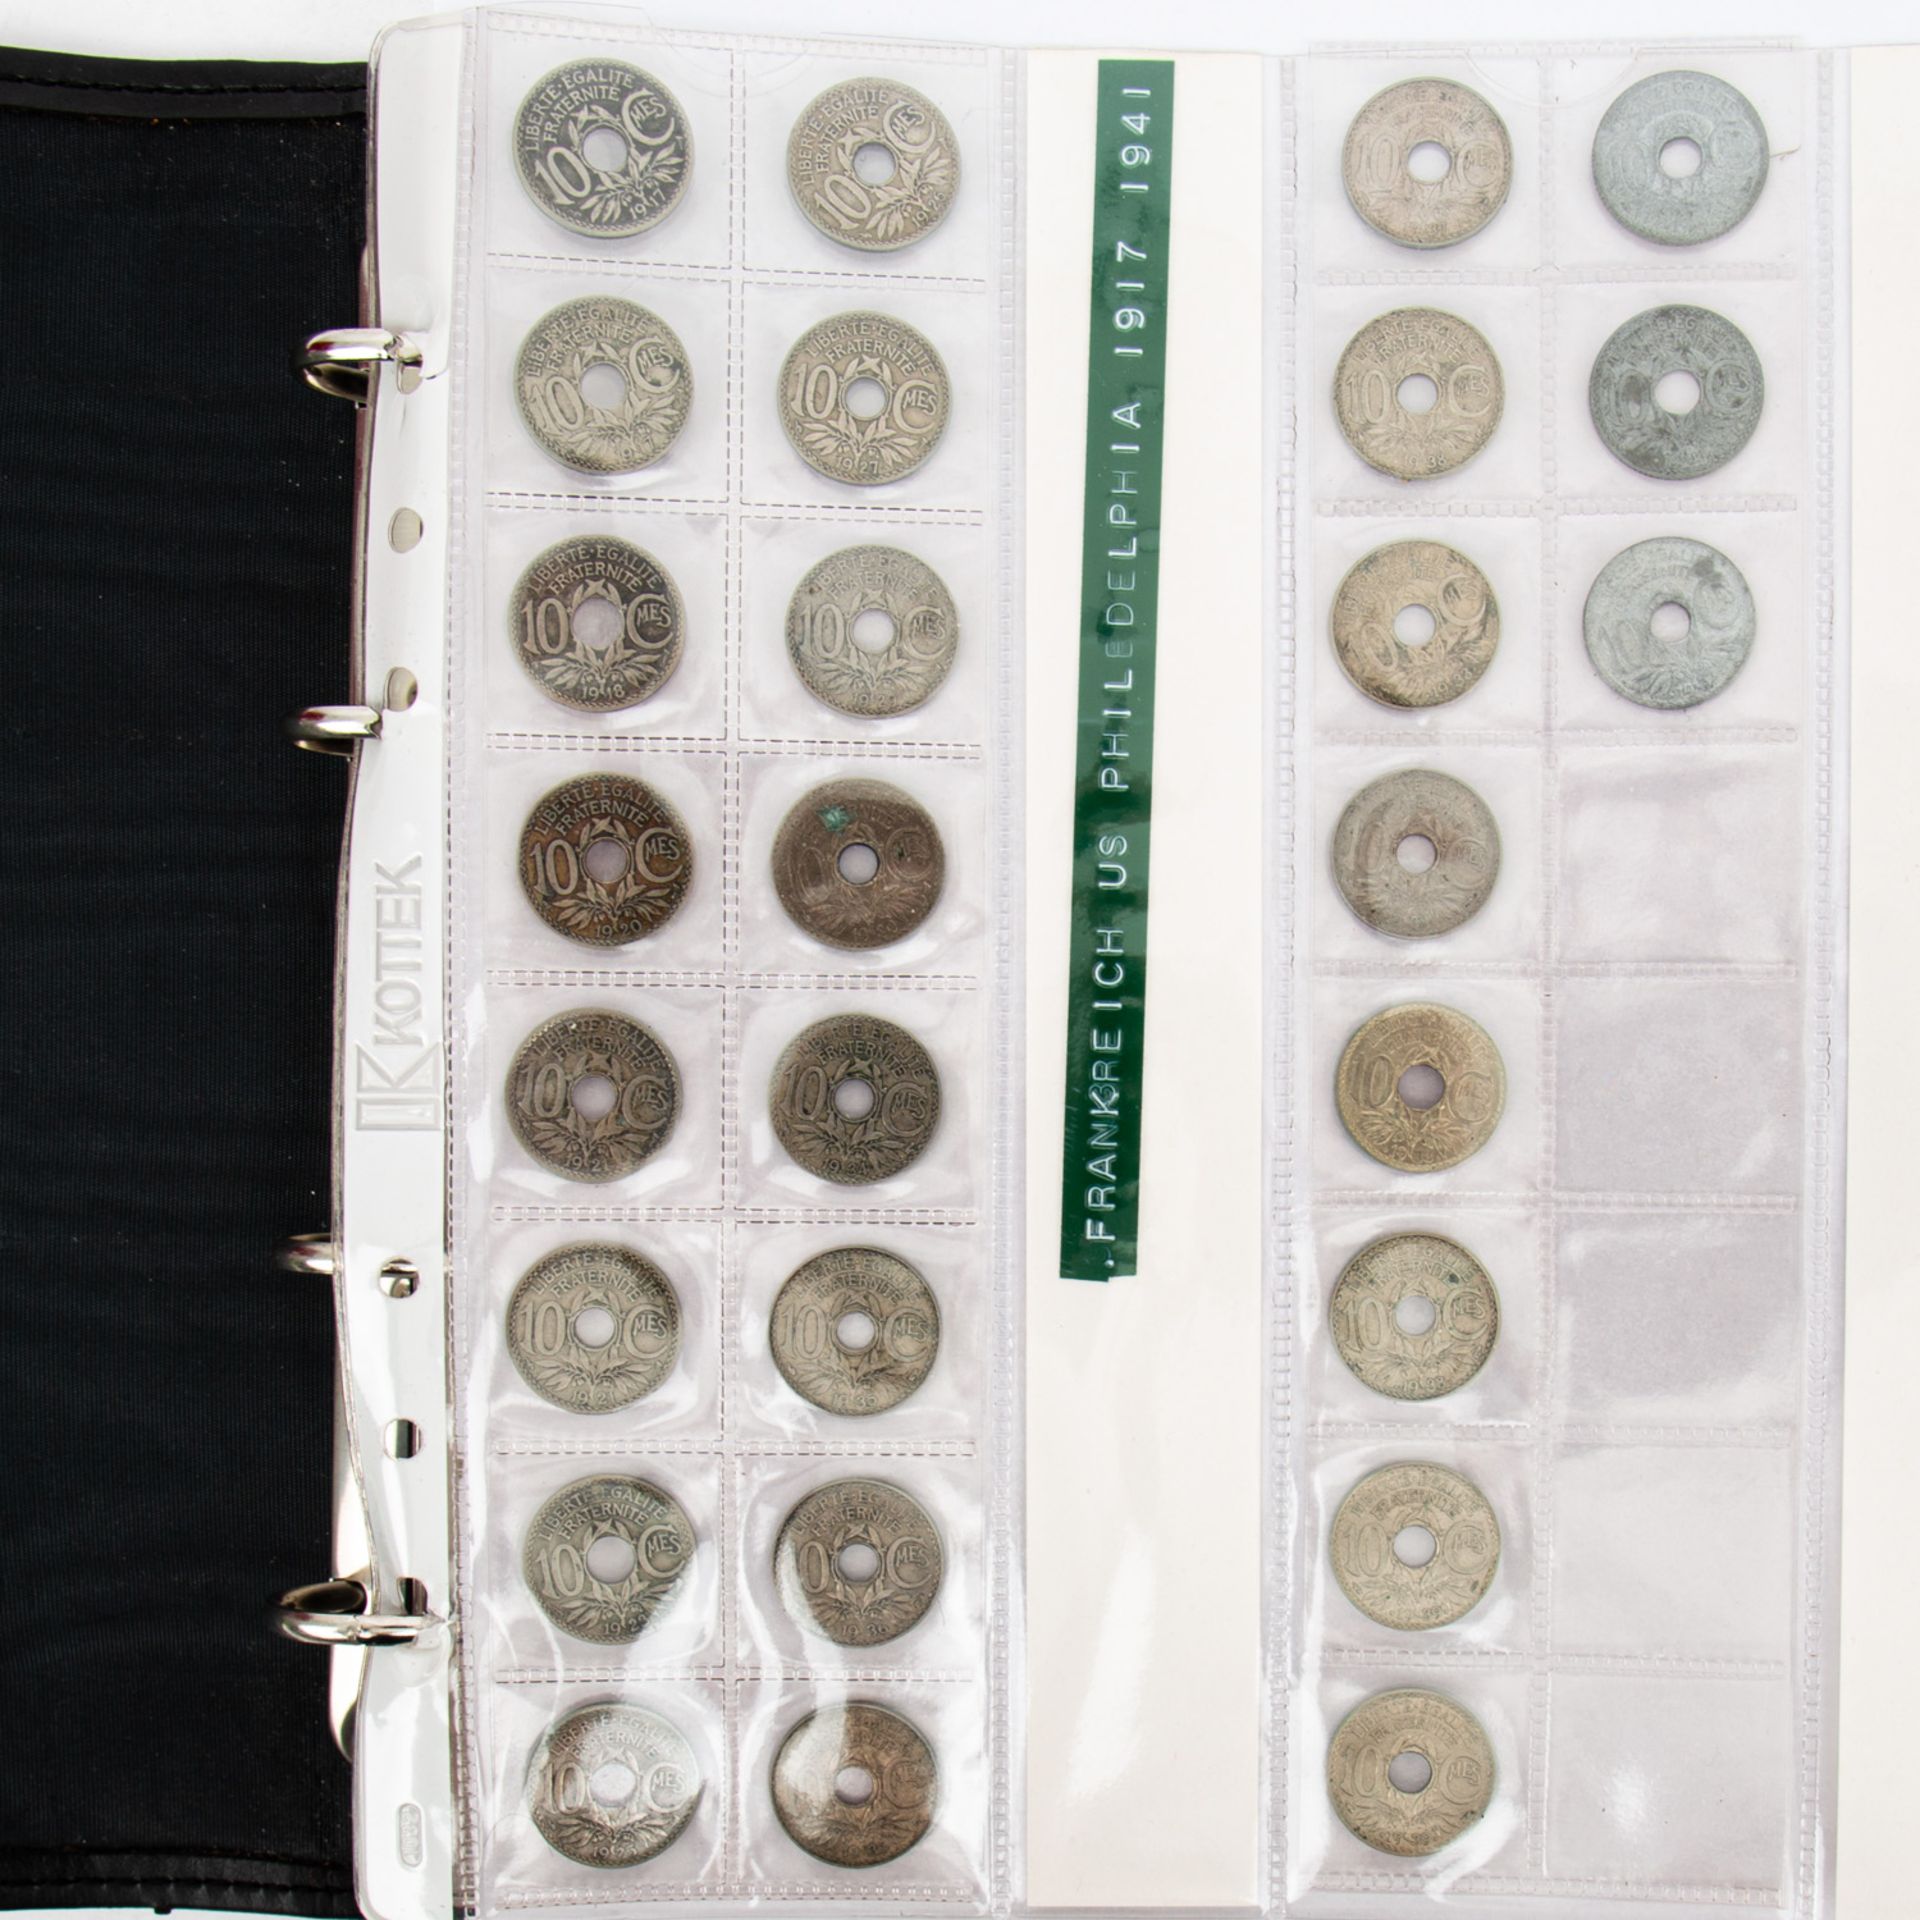 Münzenallerlei im Album,diverse Kursmünzen, Erhaltungen unterschiedlich, bitte anseh - Image 2 of 4